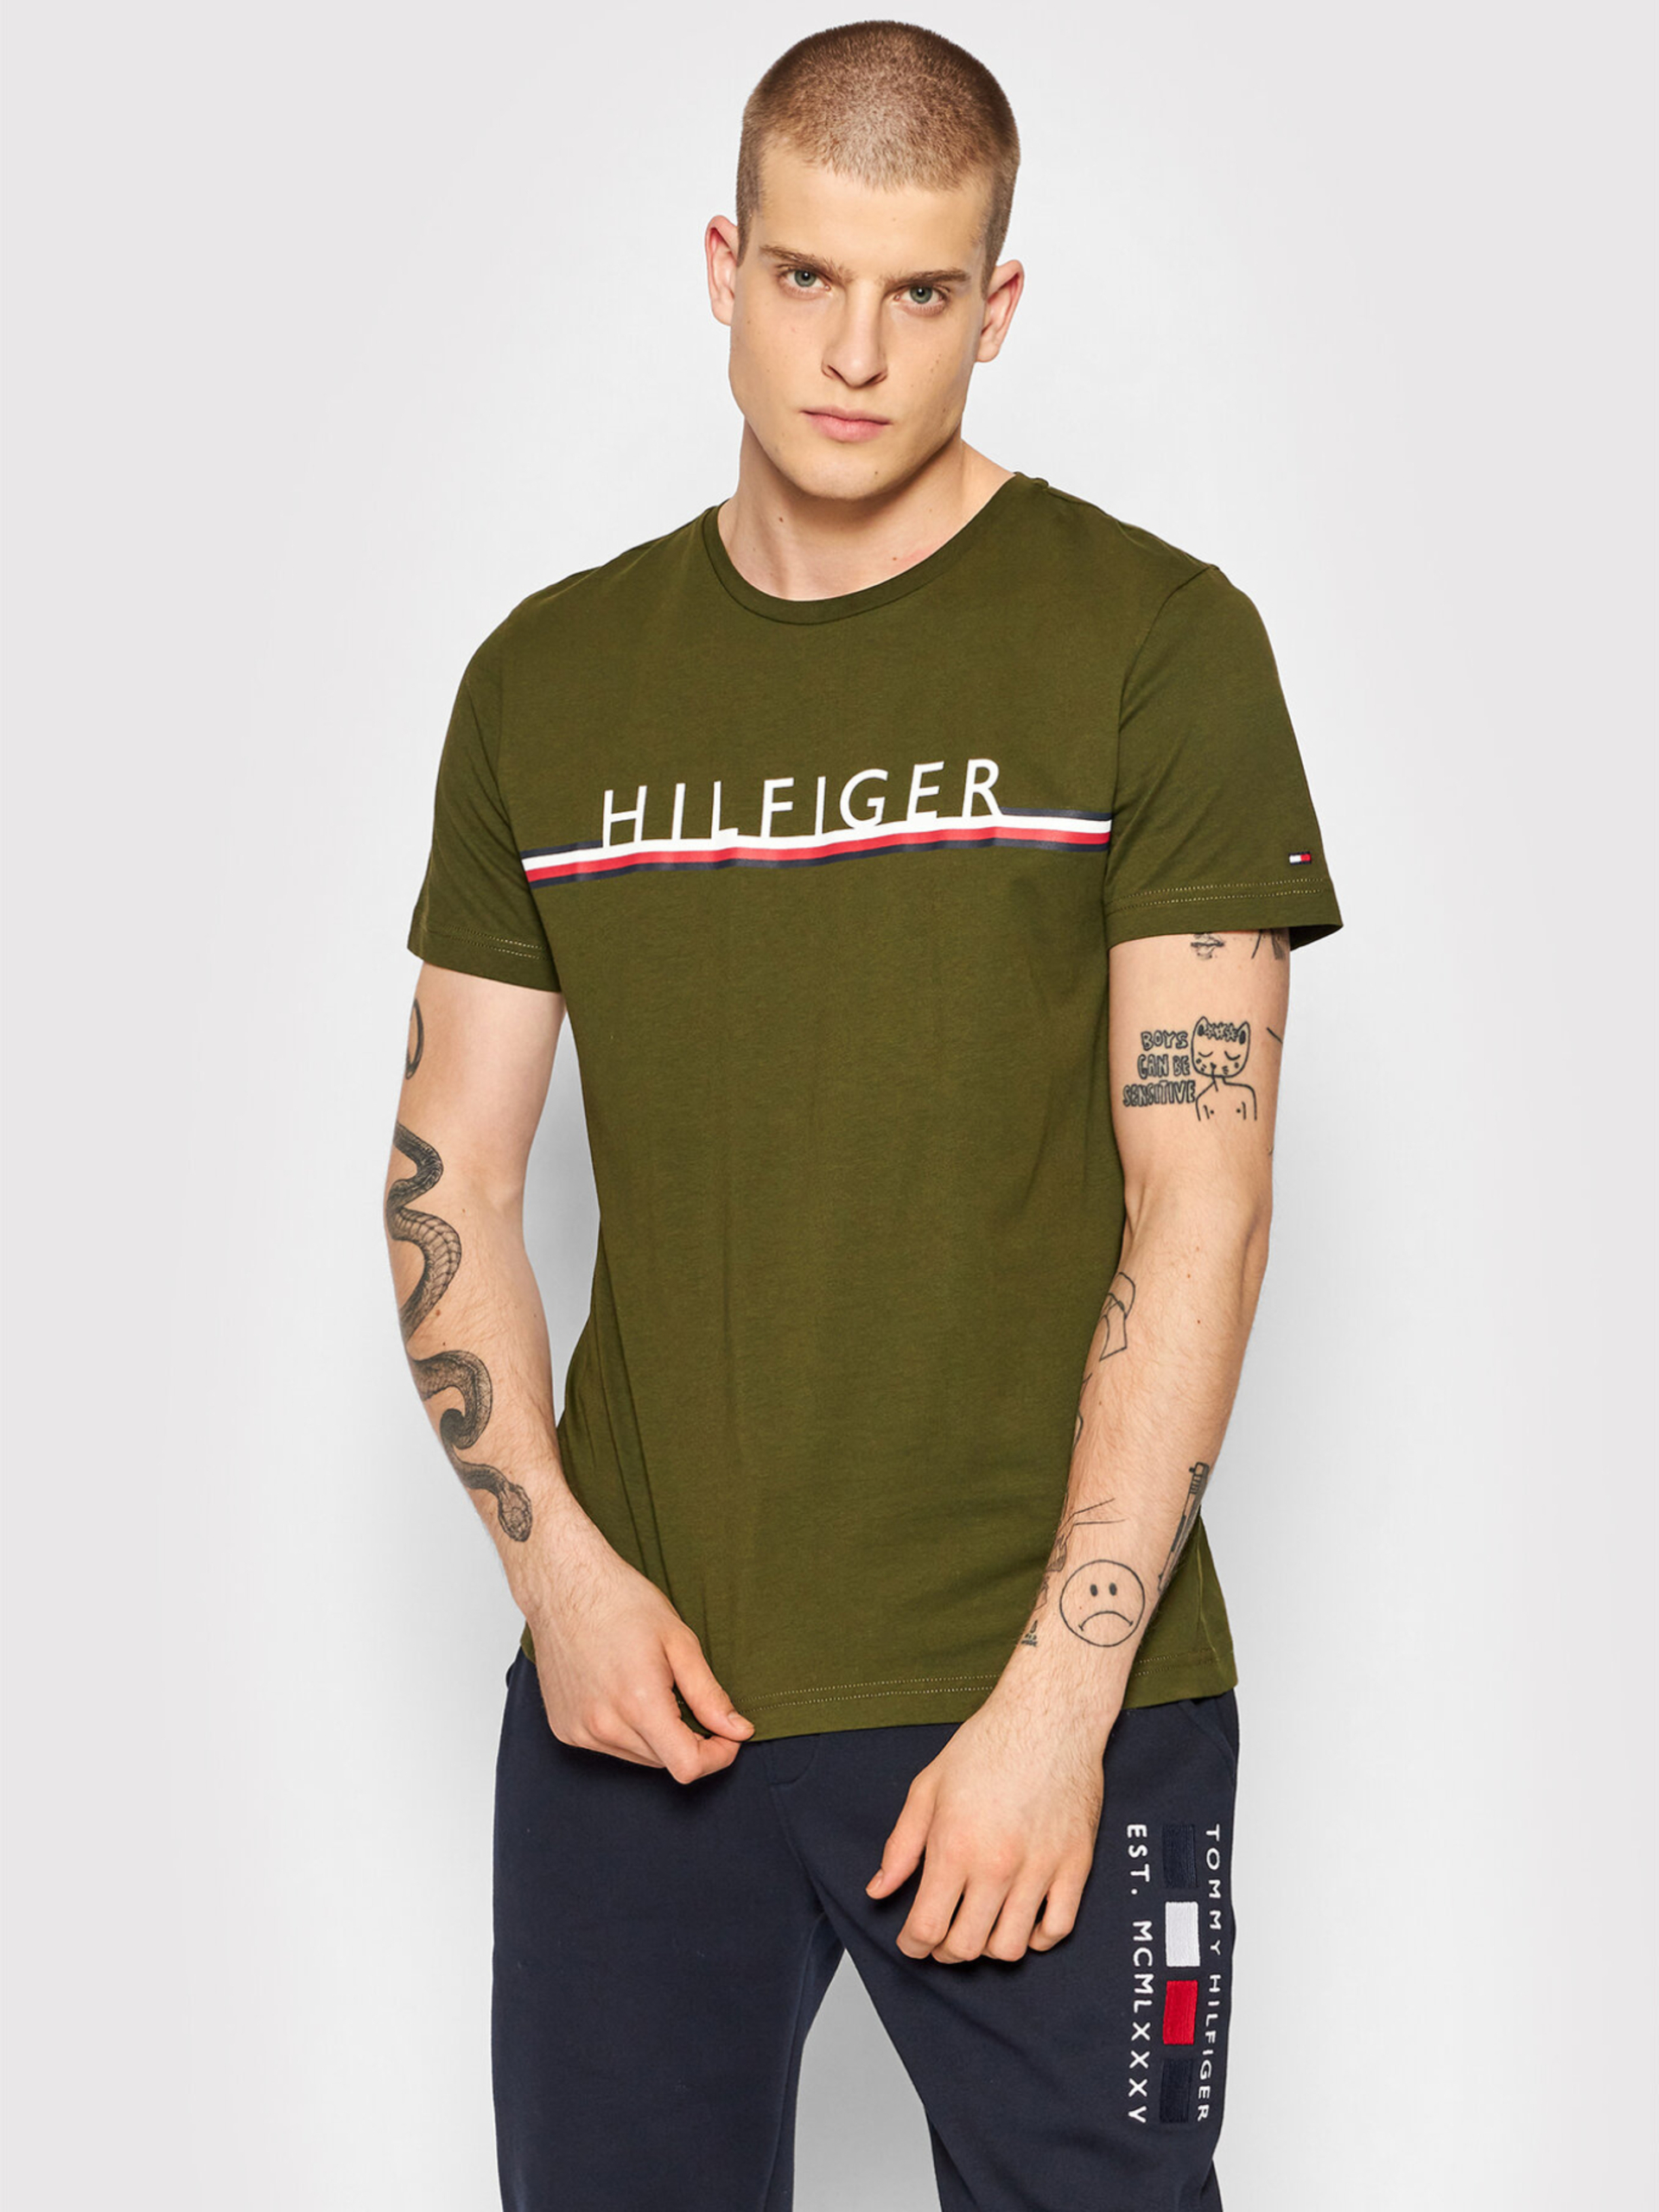 Tommy Hilfiger pánské zelené tričko - S (GYY)